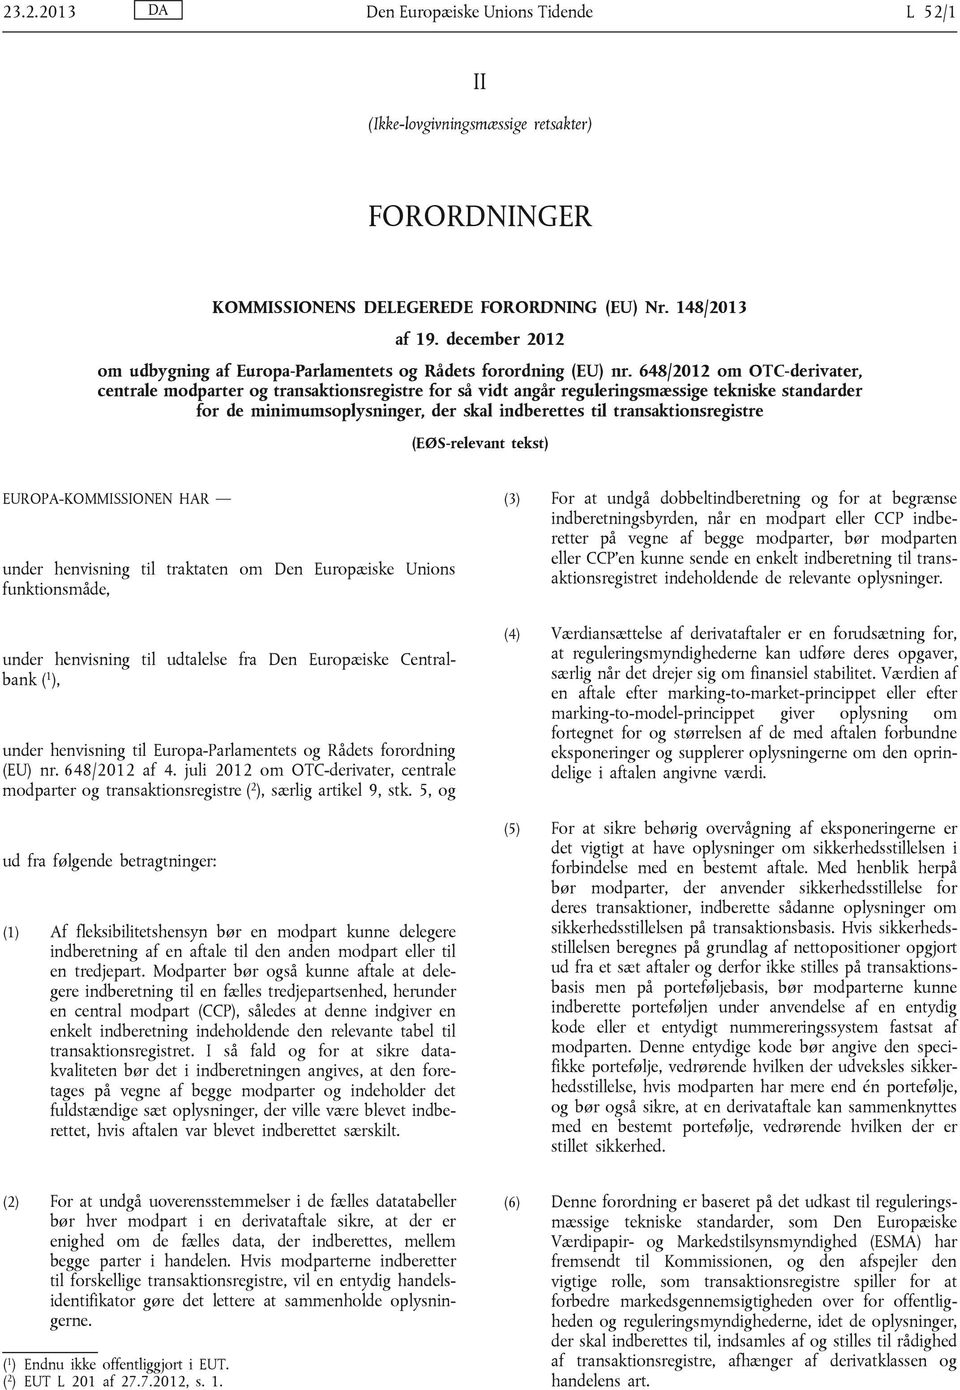 648/2012 om OTC-derivater, centrale modparter og transaktionsregistre for så vidt angår reguleringsmæssige tekniske standarder for de minimumsoplysninger, der skal indberettes til